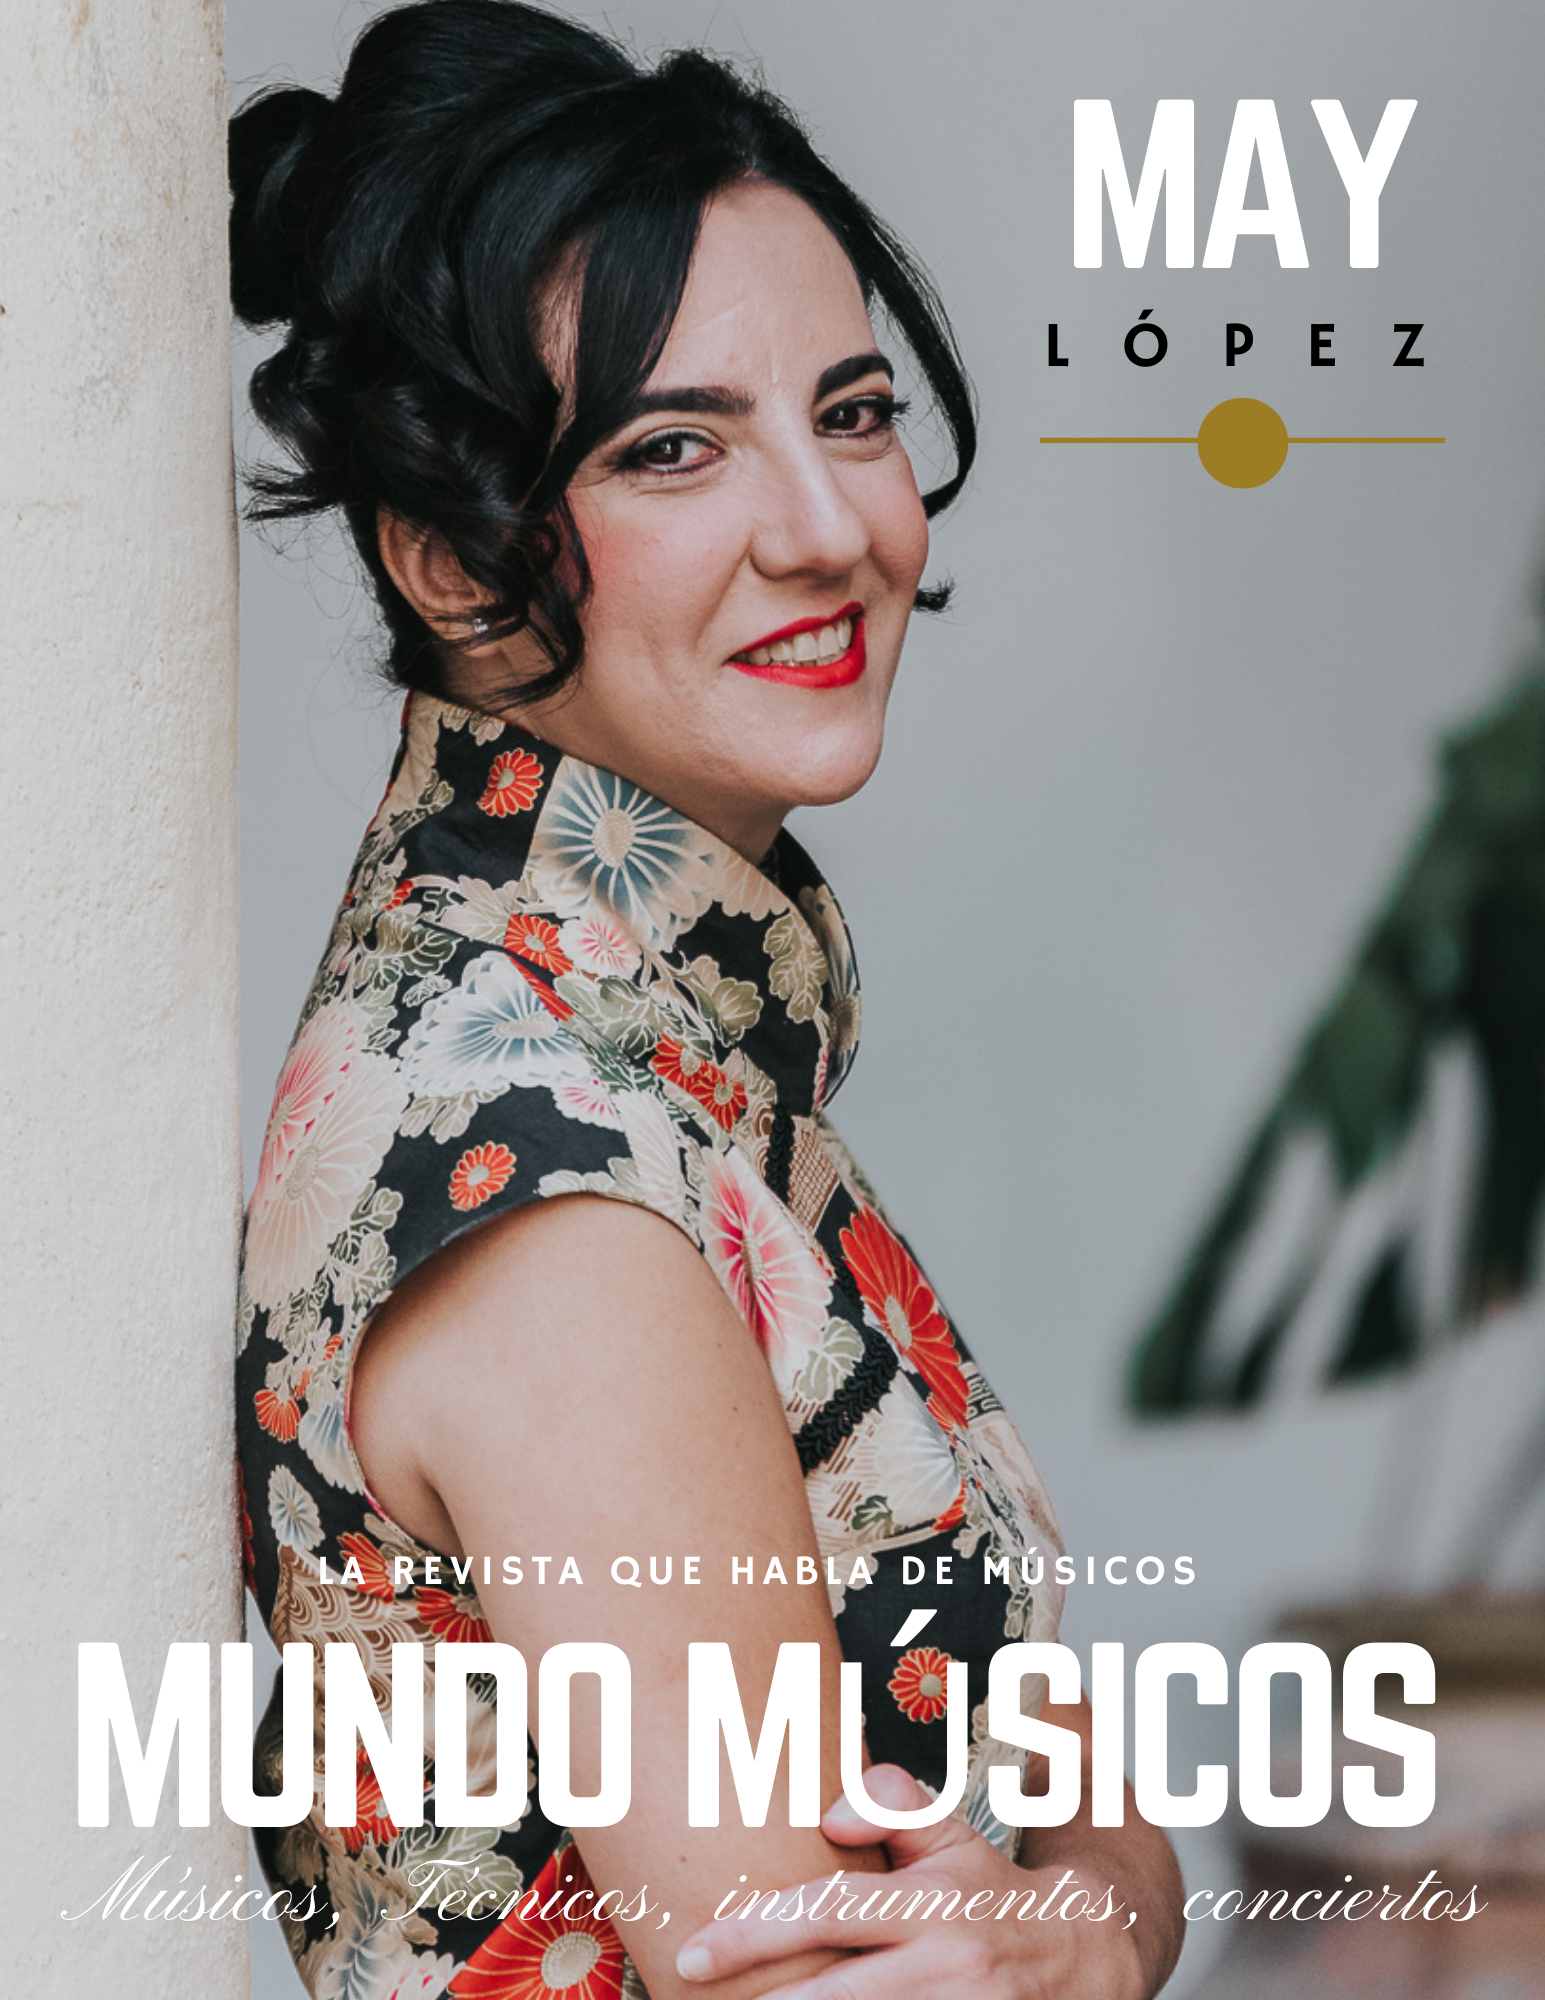 May López, cantante y compositora» La Música es el medio que me permite transmitir mis emociones, imprescindible en mi vida»